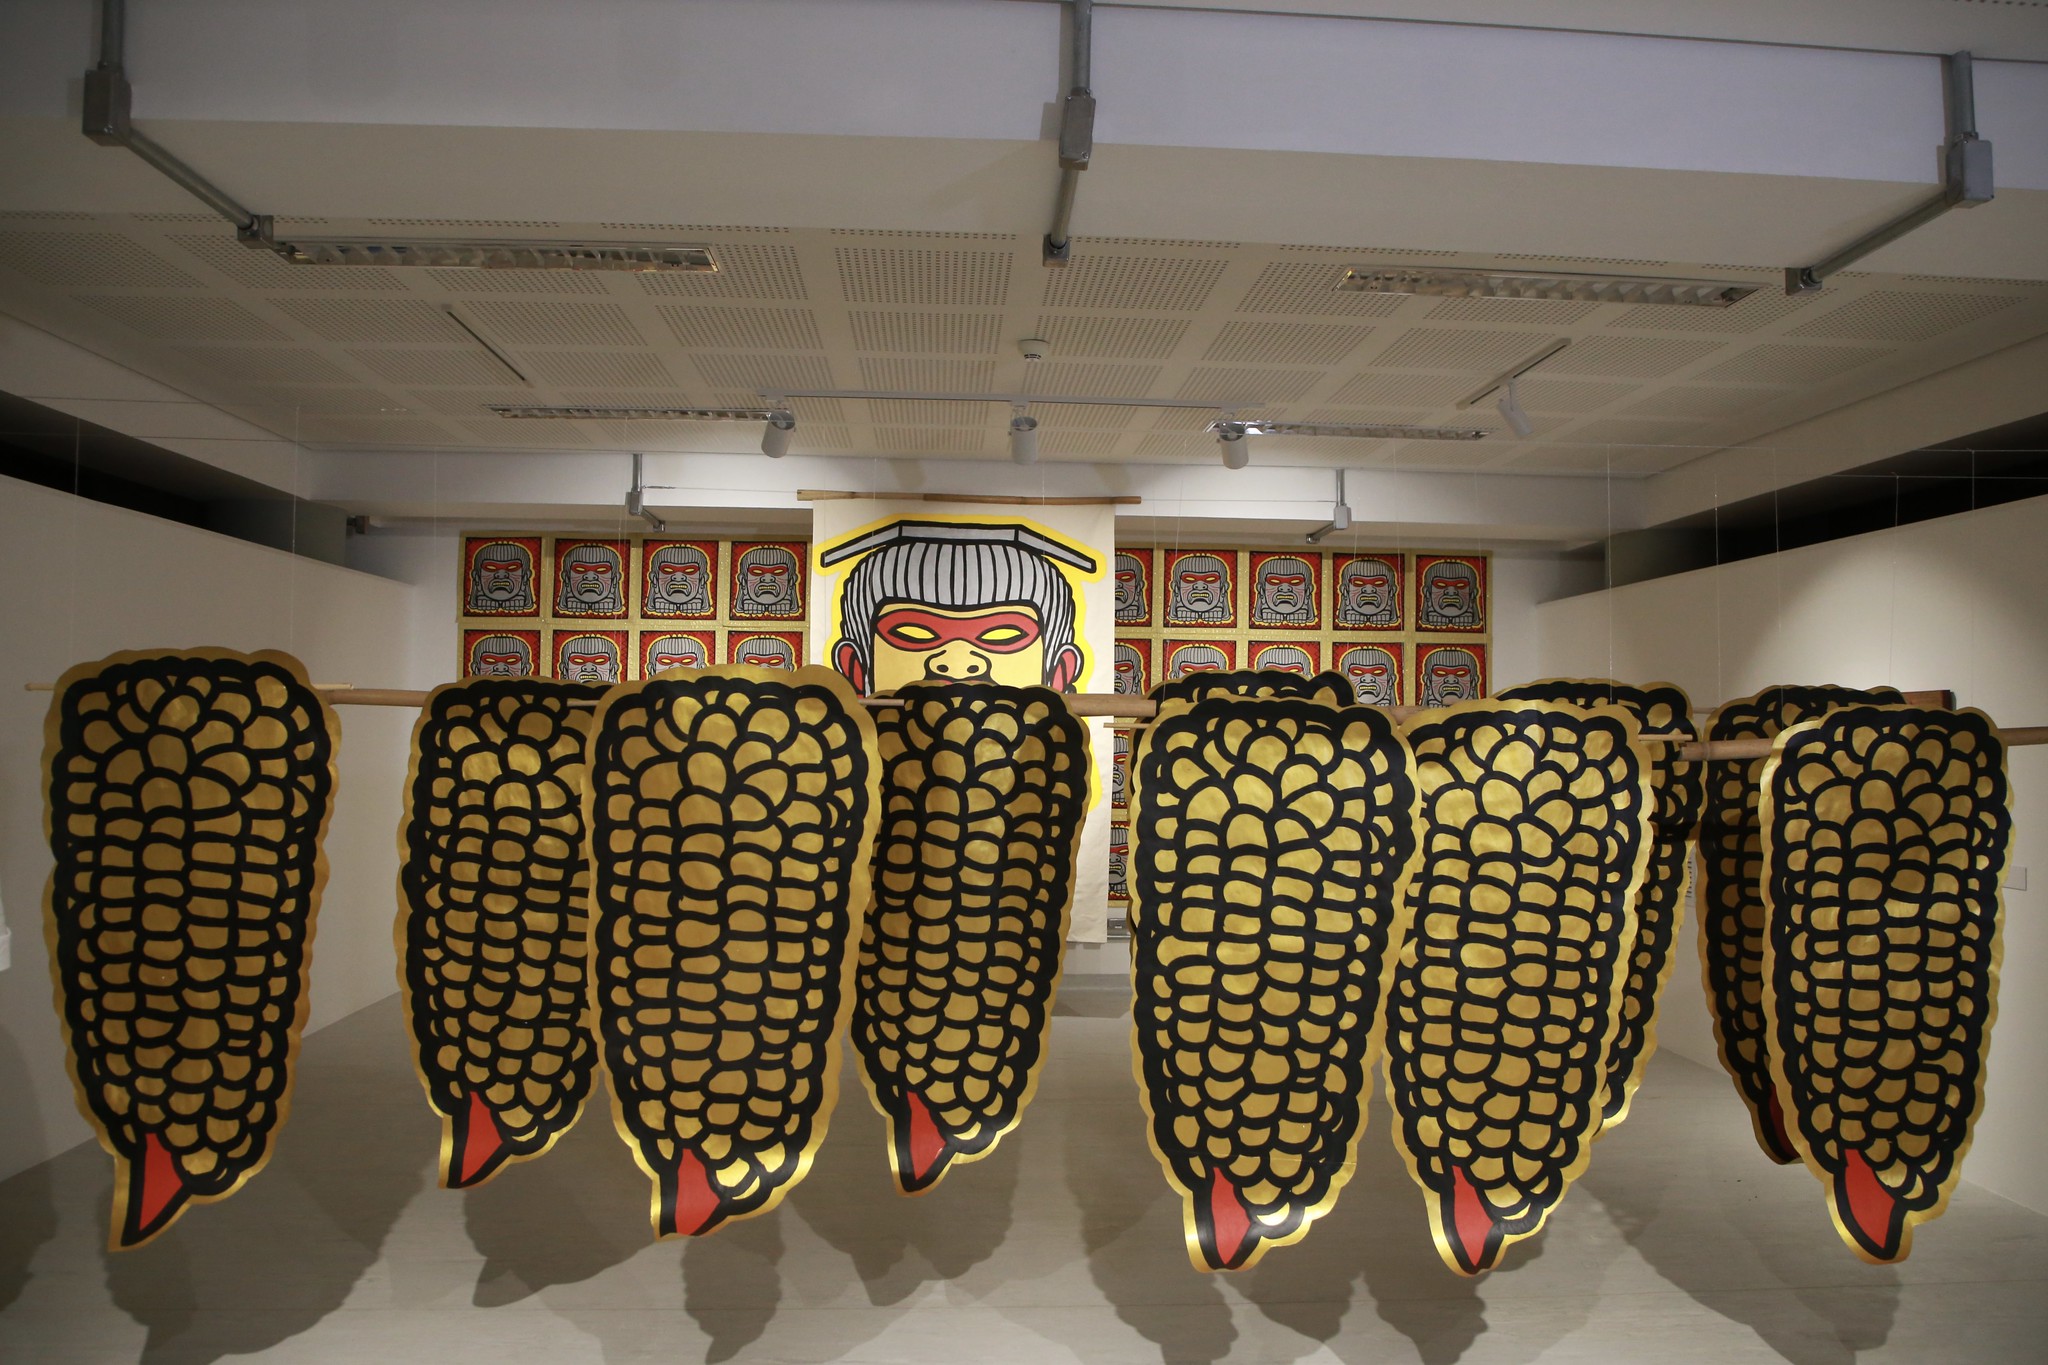 Museu paulista feito e conduzido por indígenas já recebe público e tem entrada gratuita durante o mês de julho